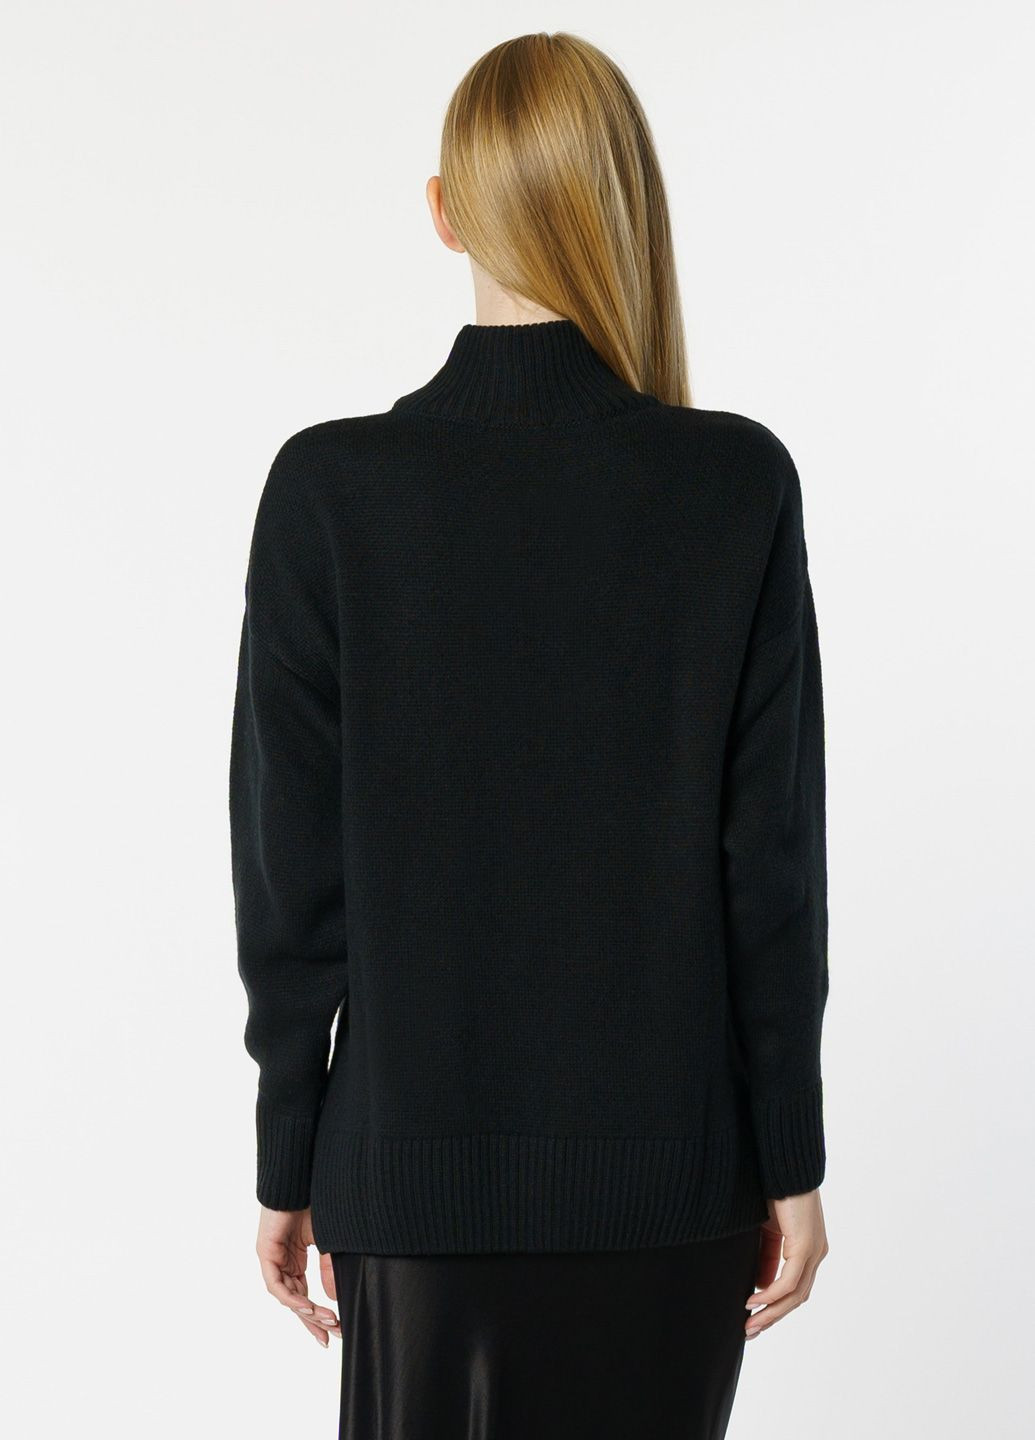 Черный зимний свитер женский черный Arber T-neck WAmb WTR-140